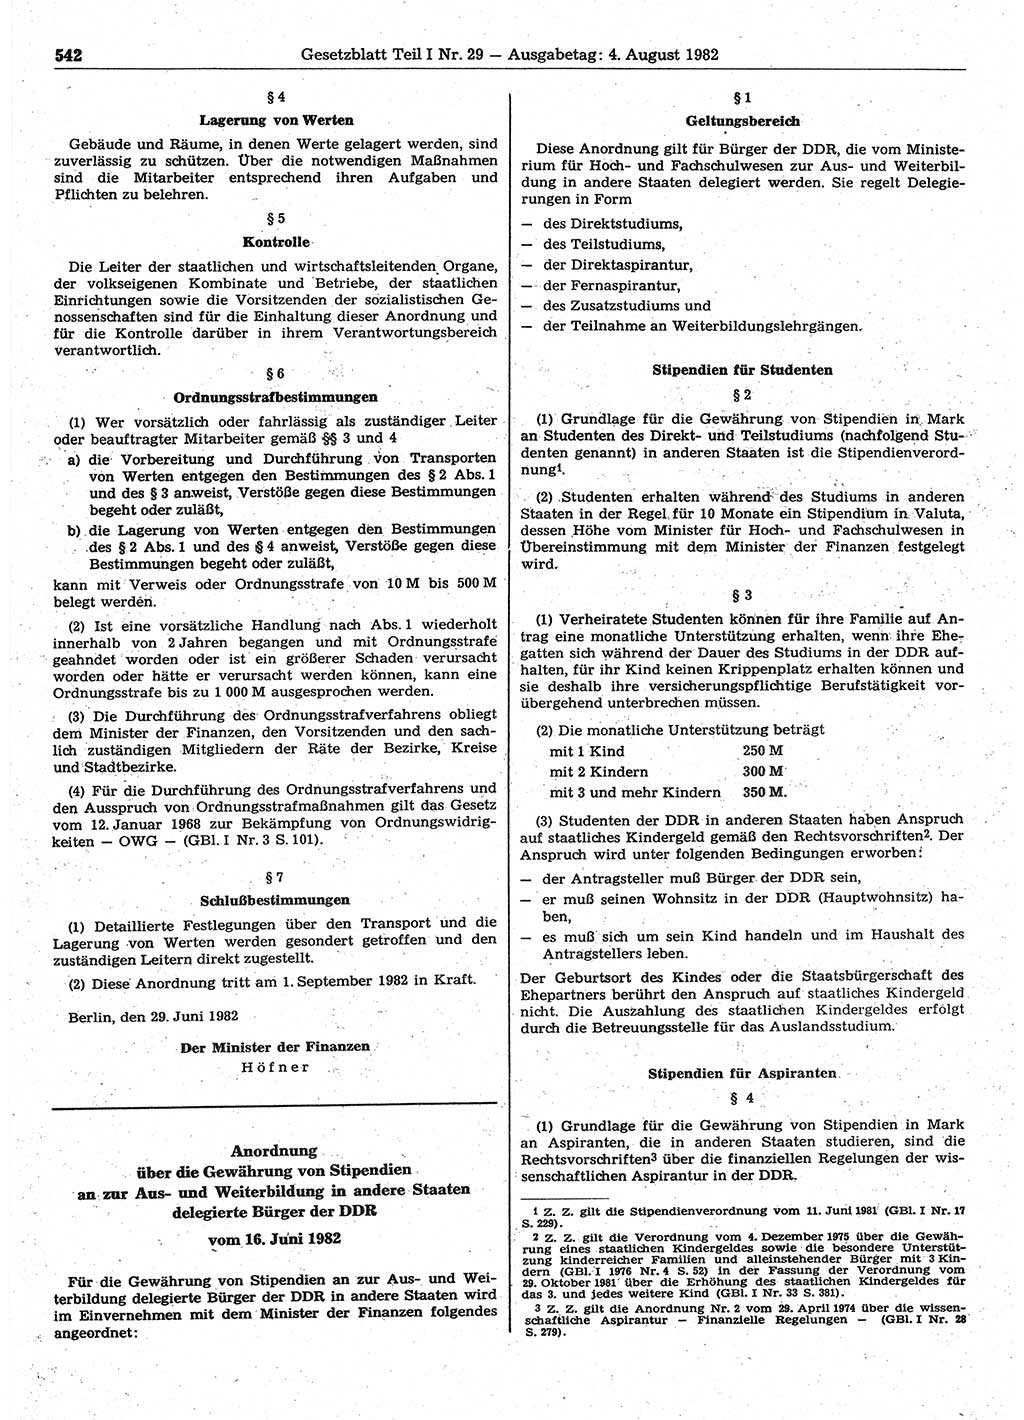 Gesetzblatt (GBl.) der Deutschen Demokratischen Republik (DDR) Teil Ⅰ 1982, Seite 542 (GBl. DDR Ⅰ 1982, S. 542)